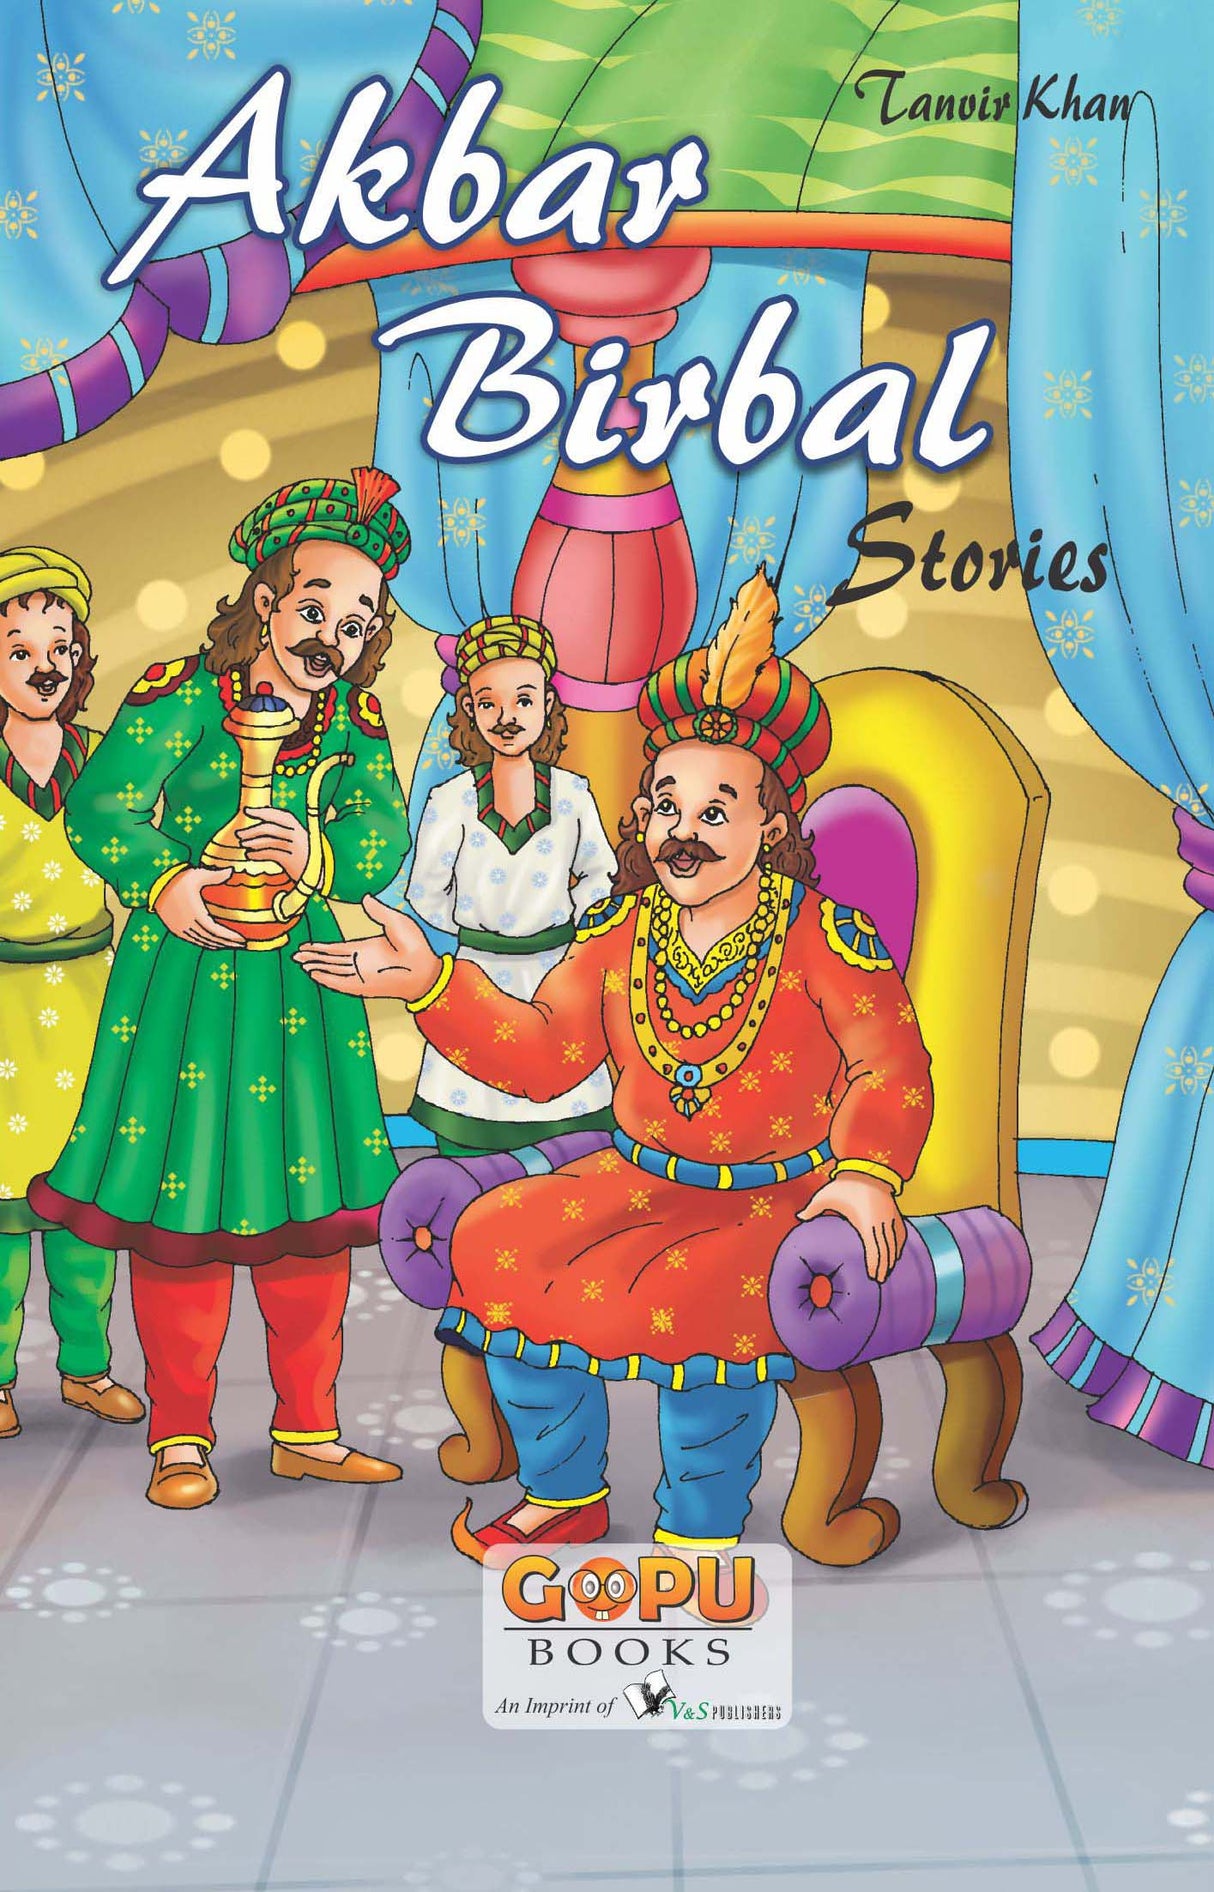 Akbar-Birbal  Story: Short Simple Stories for Children